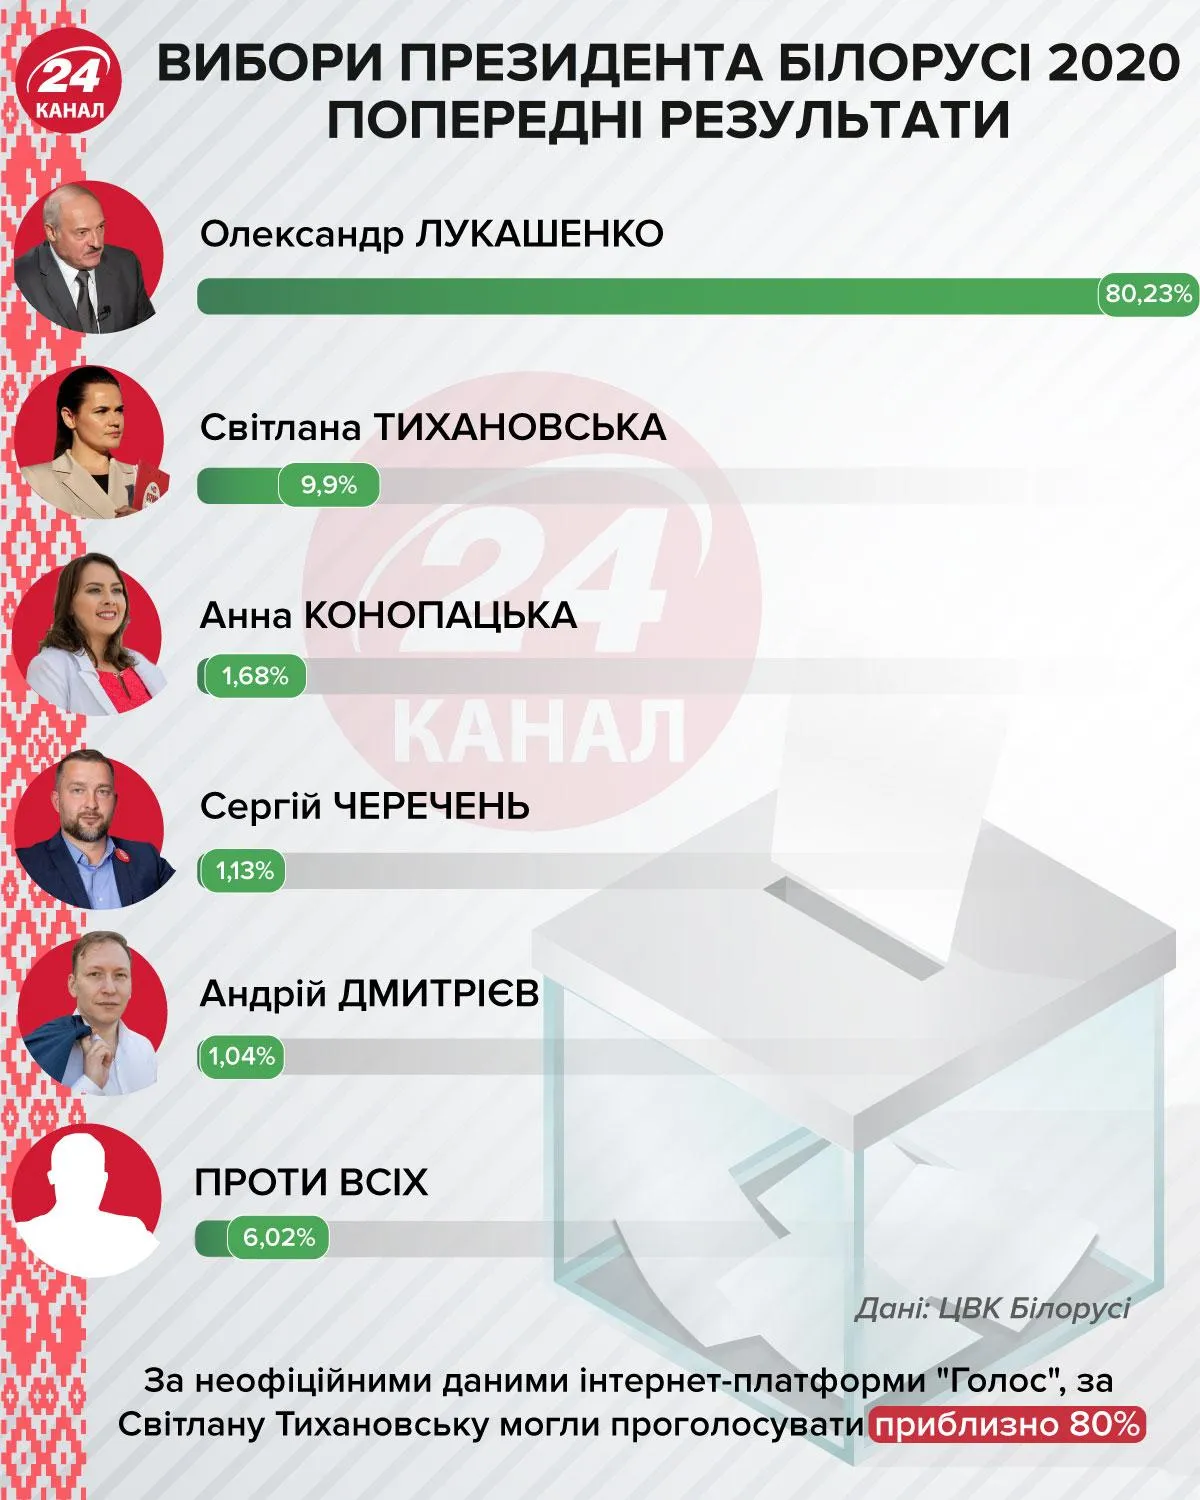 попередні результати виборів президента білорусі інфографіка 24 канал